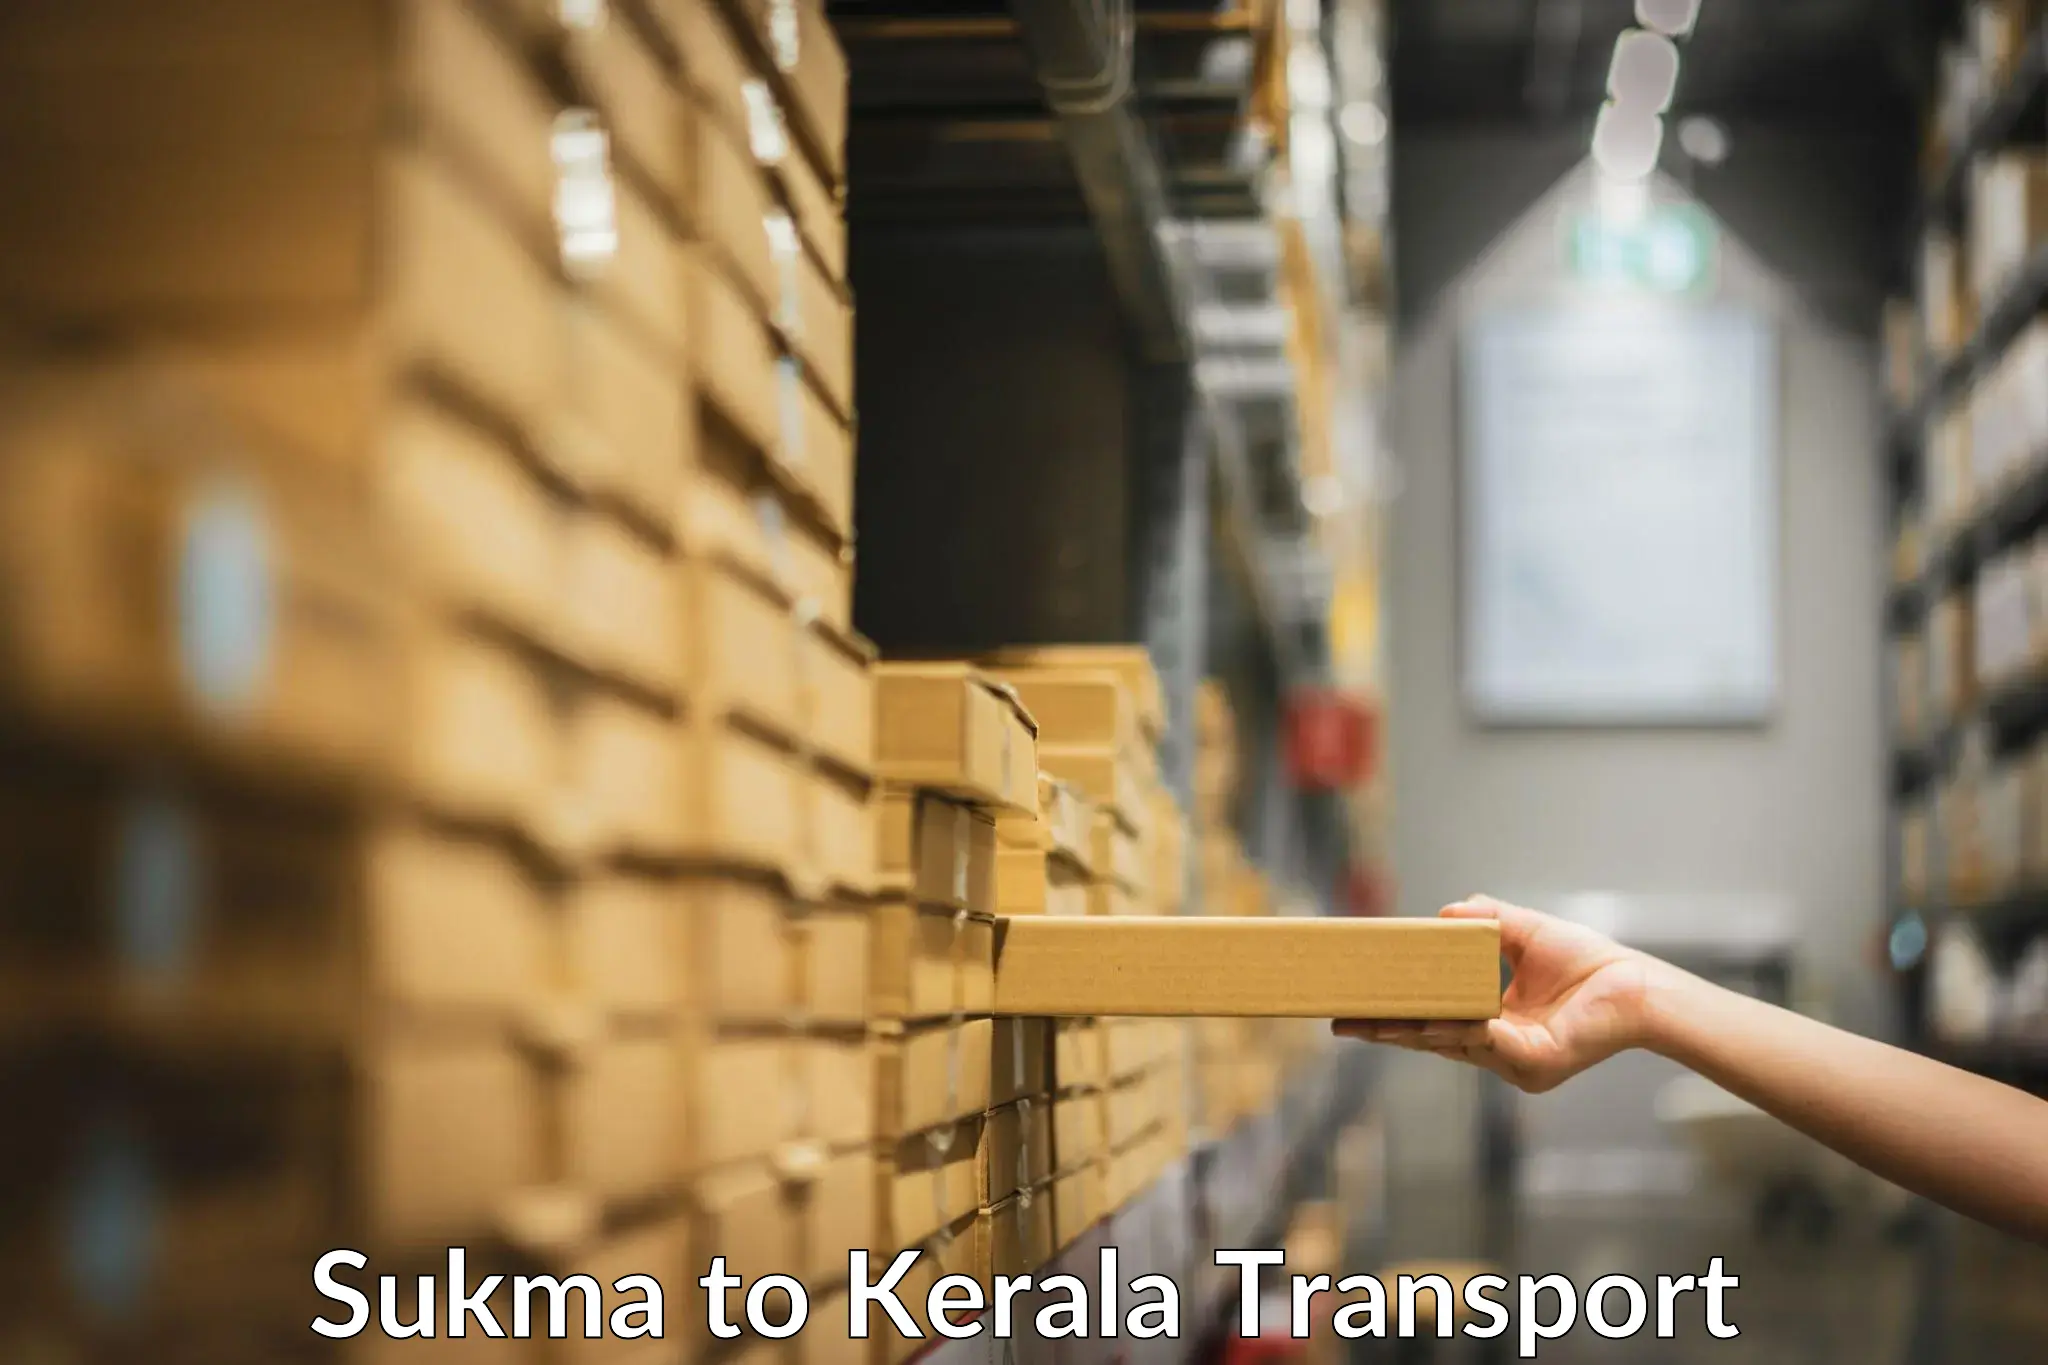 Nearby transport service Sukma to Nallepilly